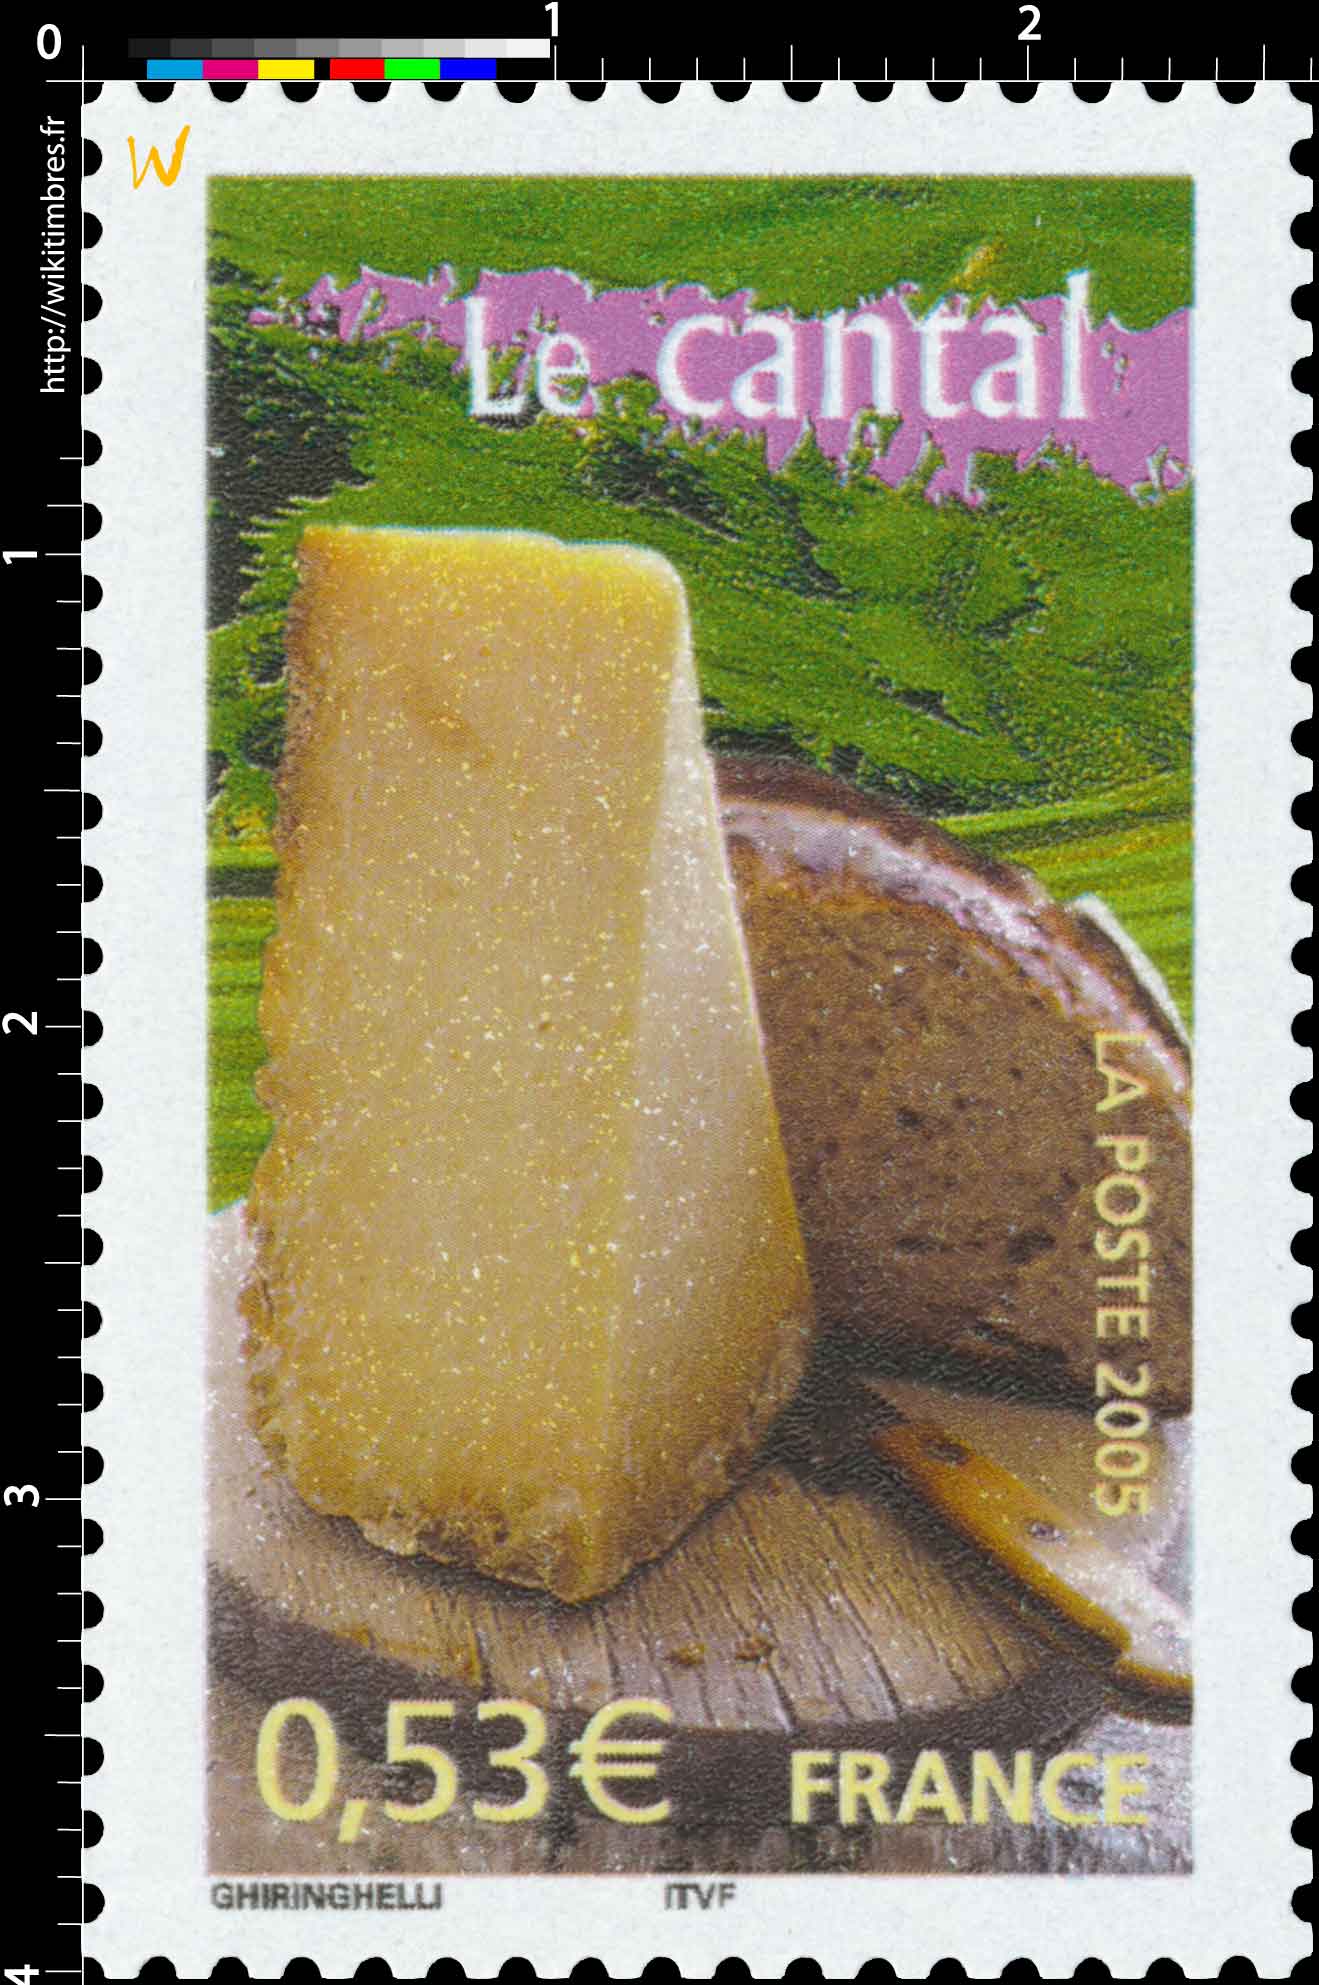 2005 Le cantal